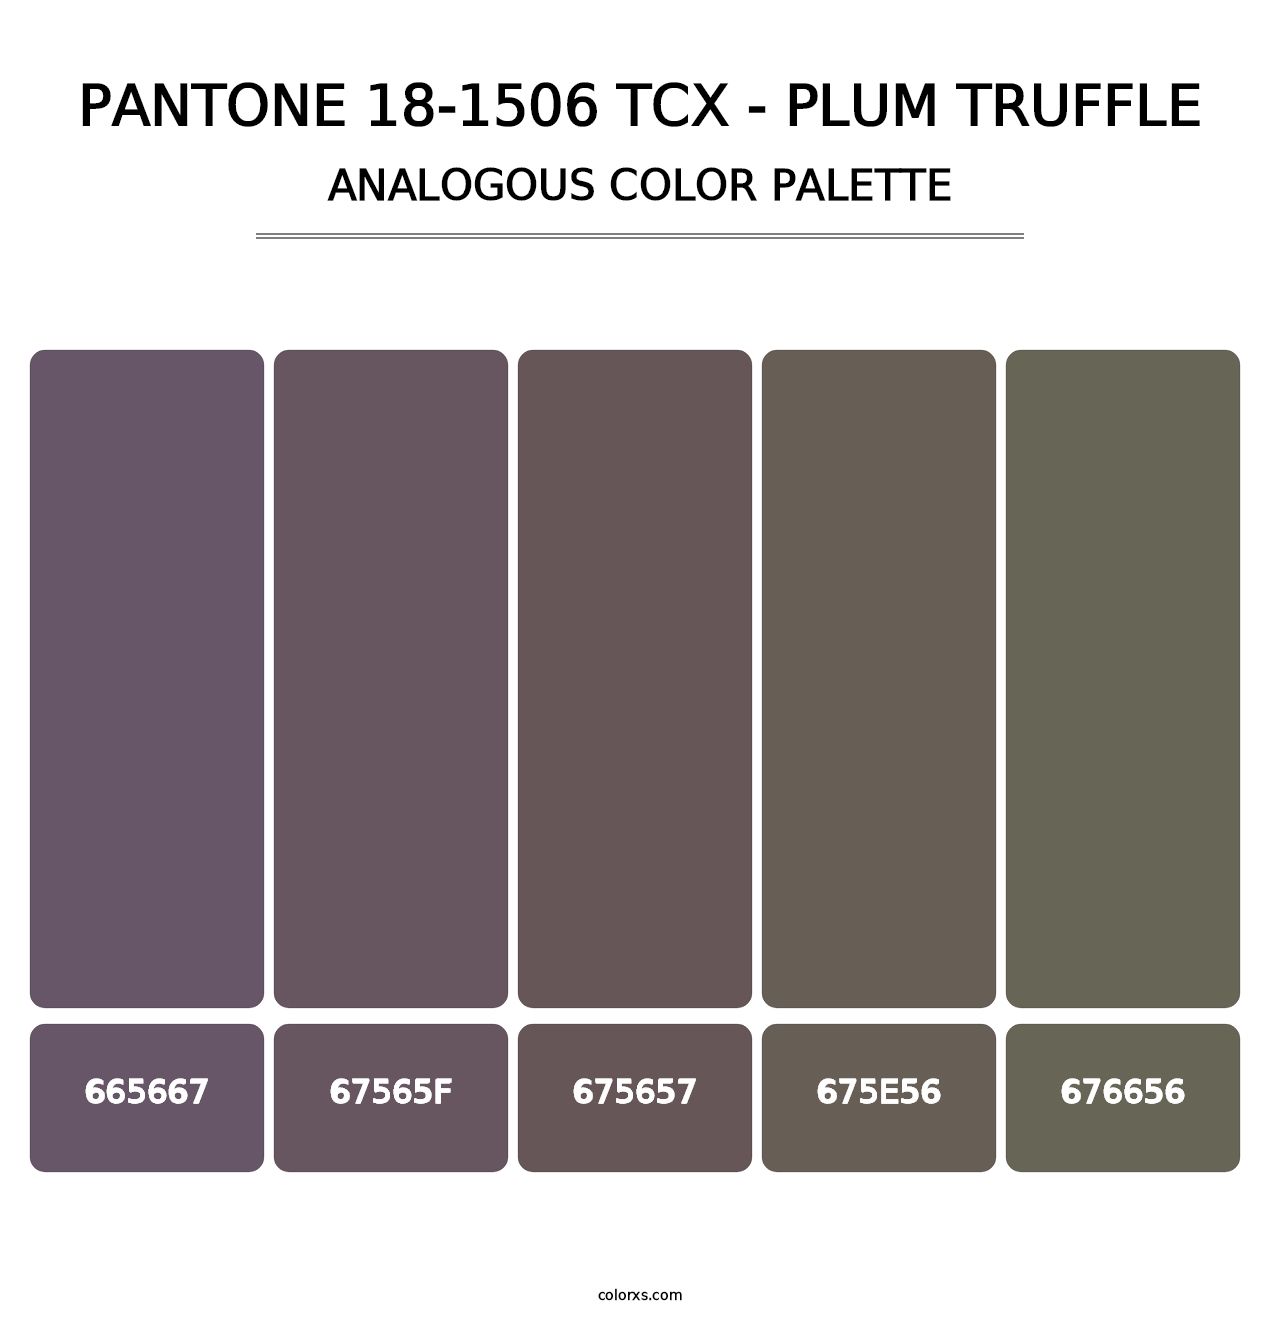 PANTONE 18-1506 TCX - Plum Truffle - Analogous Color Palette